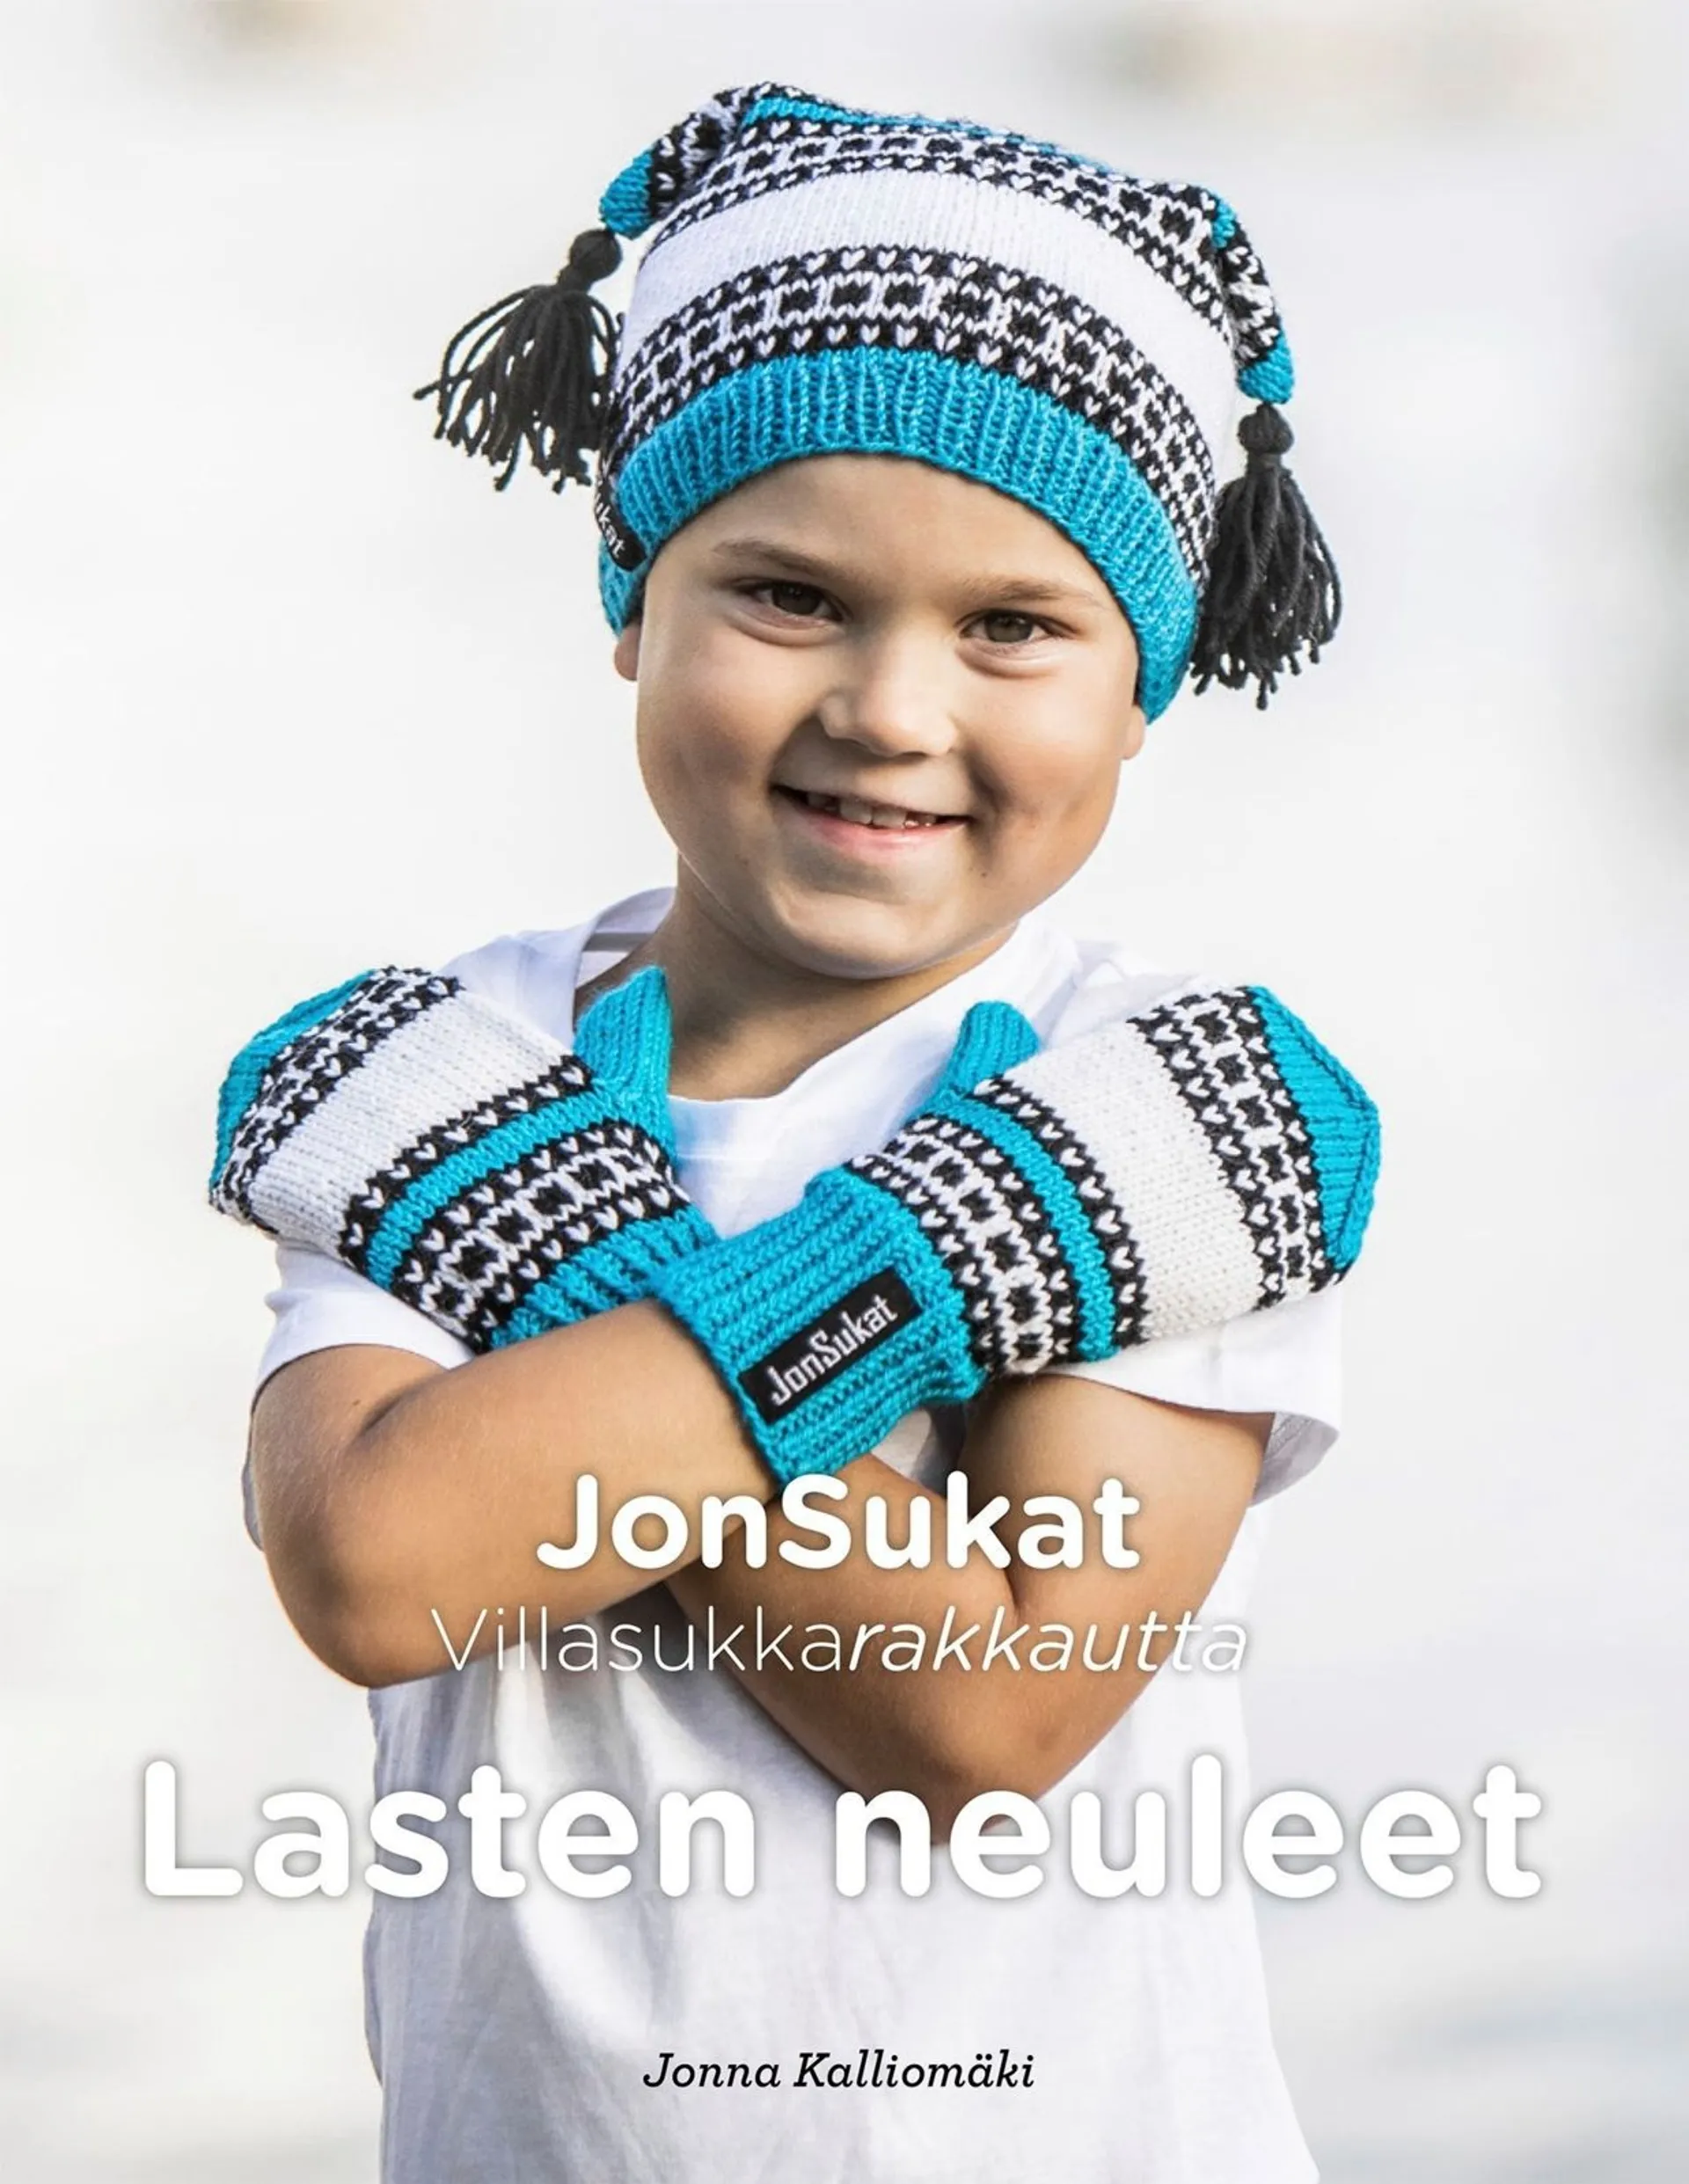 Nordström, Villasukkarakkautta - Jonsukat - Lasten neuleet